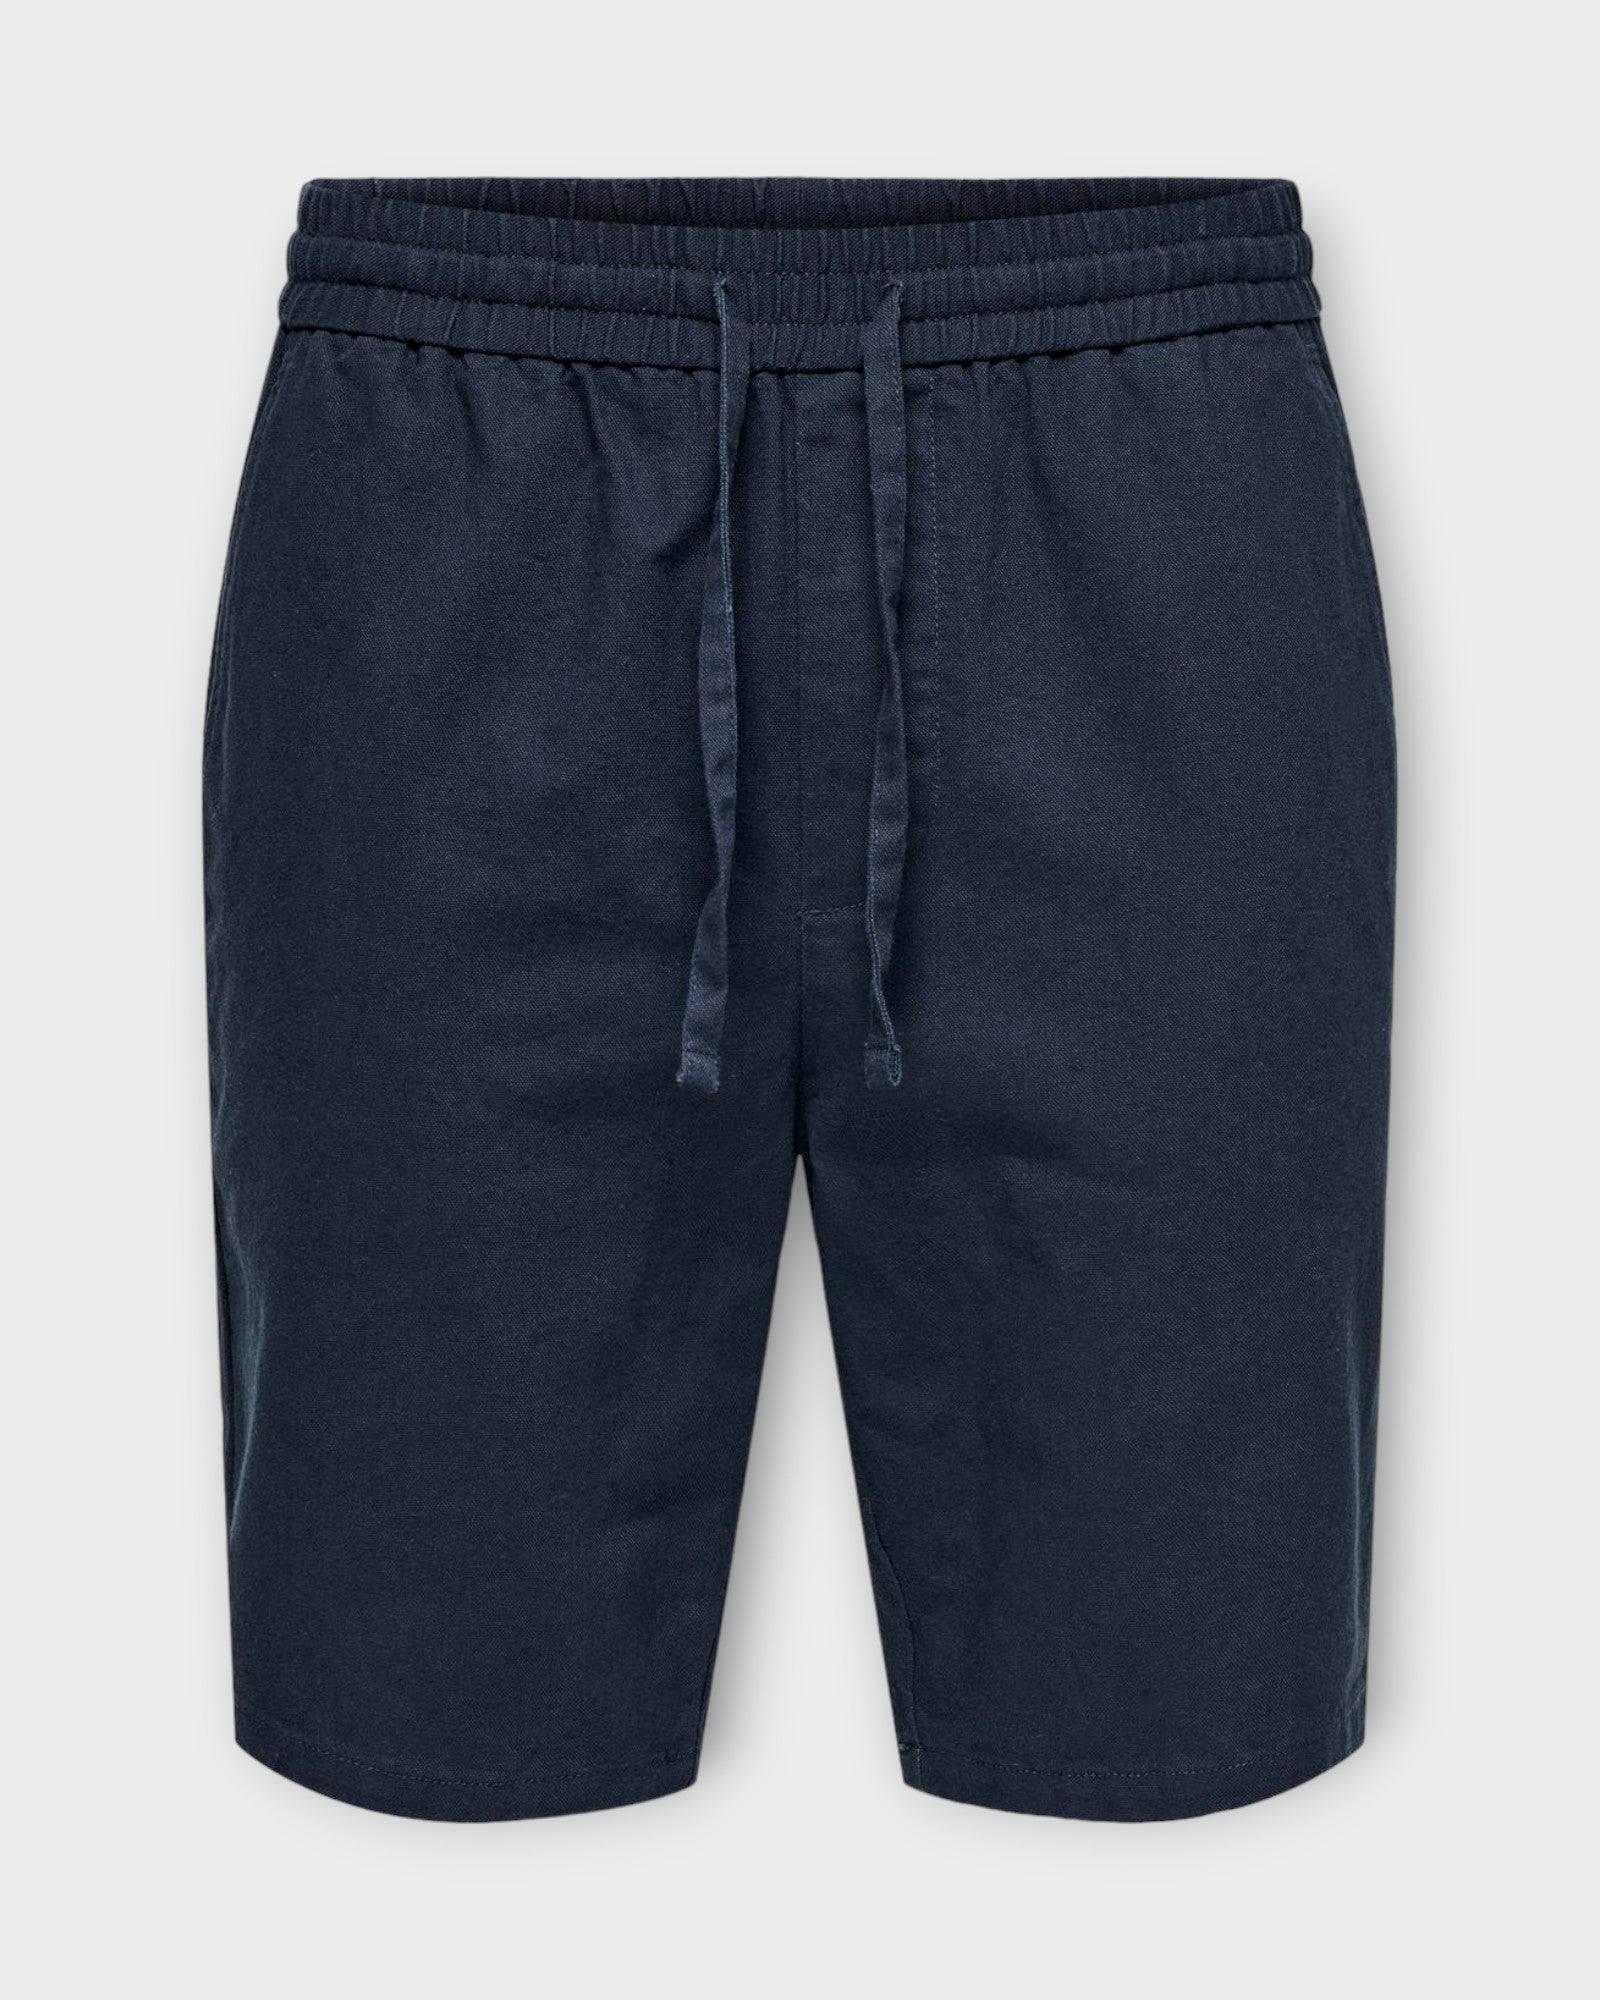 Linus 0007 Cot Lin Shorts Noos Dark Navy fra Only and Sons. Mørkeblå hør shorts til mænd. Her set forfra.